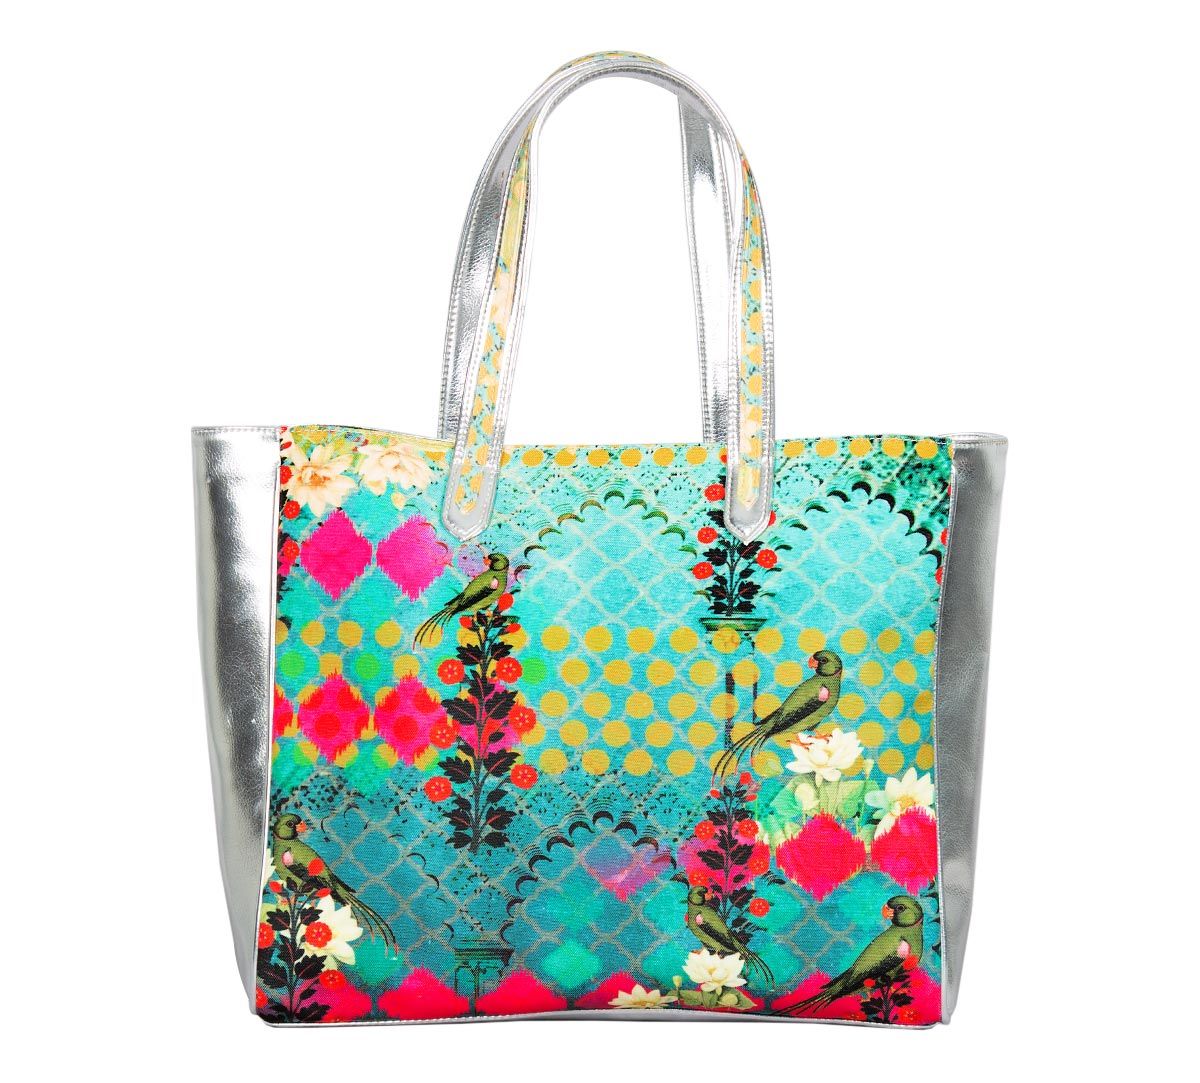 Buy Tote Handbags Online - Garden of Evanescence Tote Bag